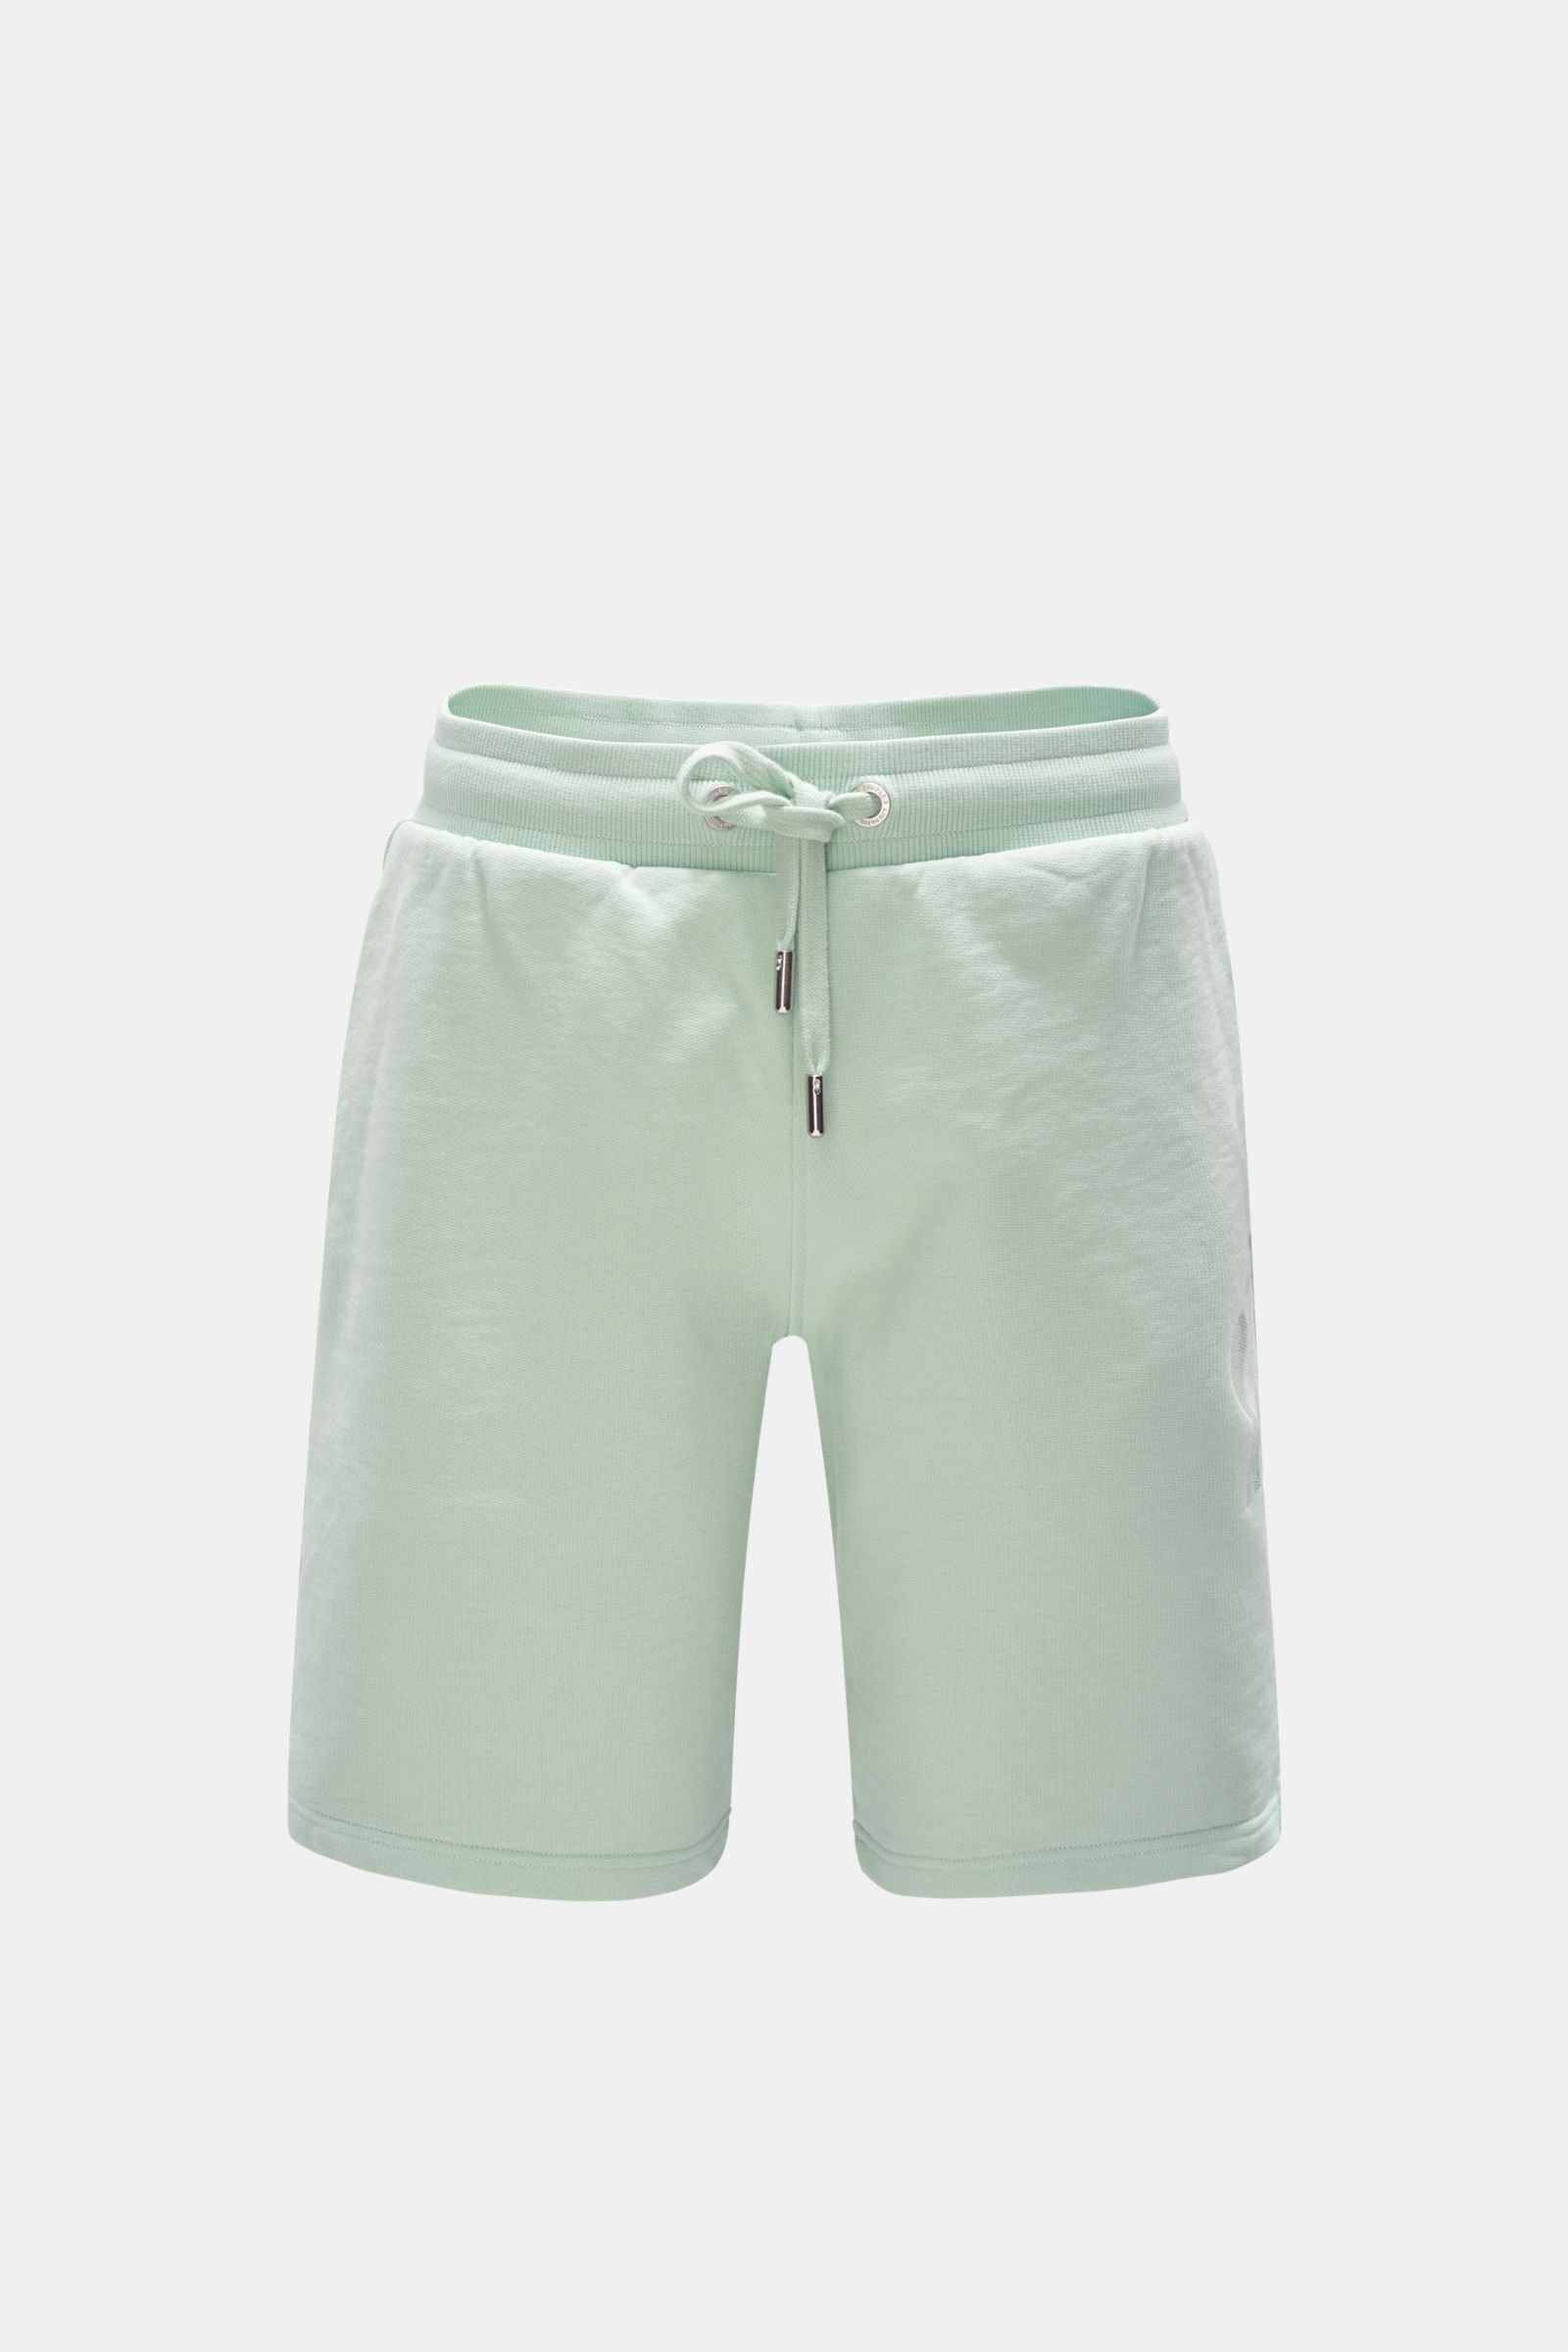 Sweat shorts mint green